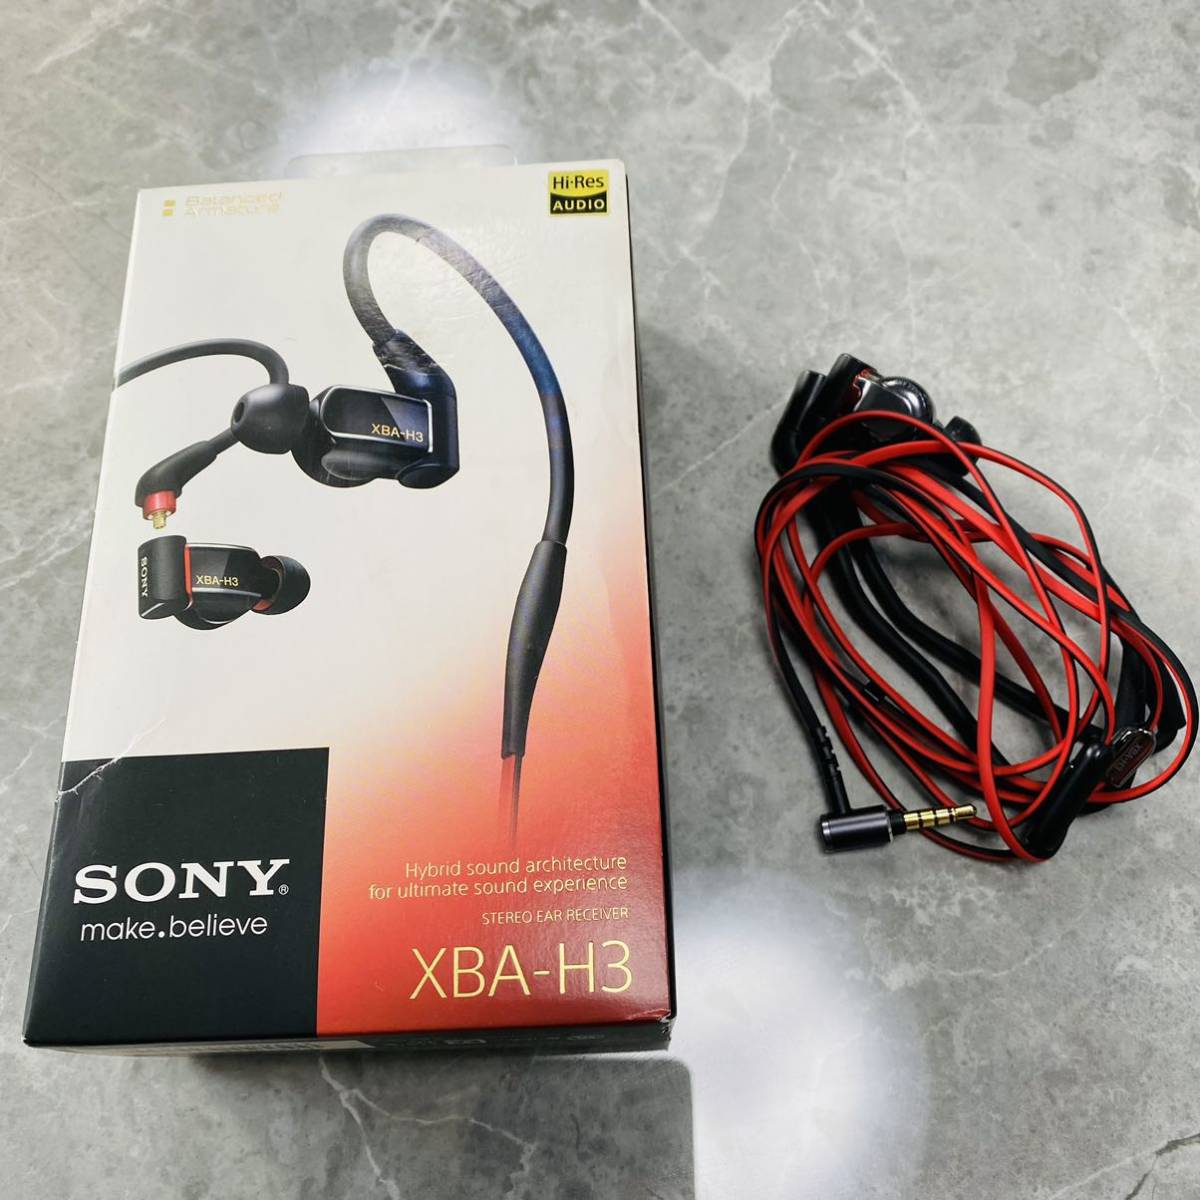 ベストセラー SONY XBA-H3ソニー ハイレゾ音源 ハイレゾ対応イヤホン